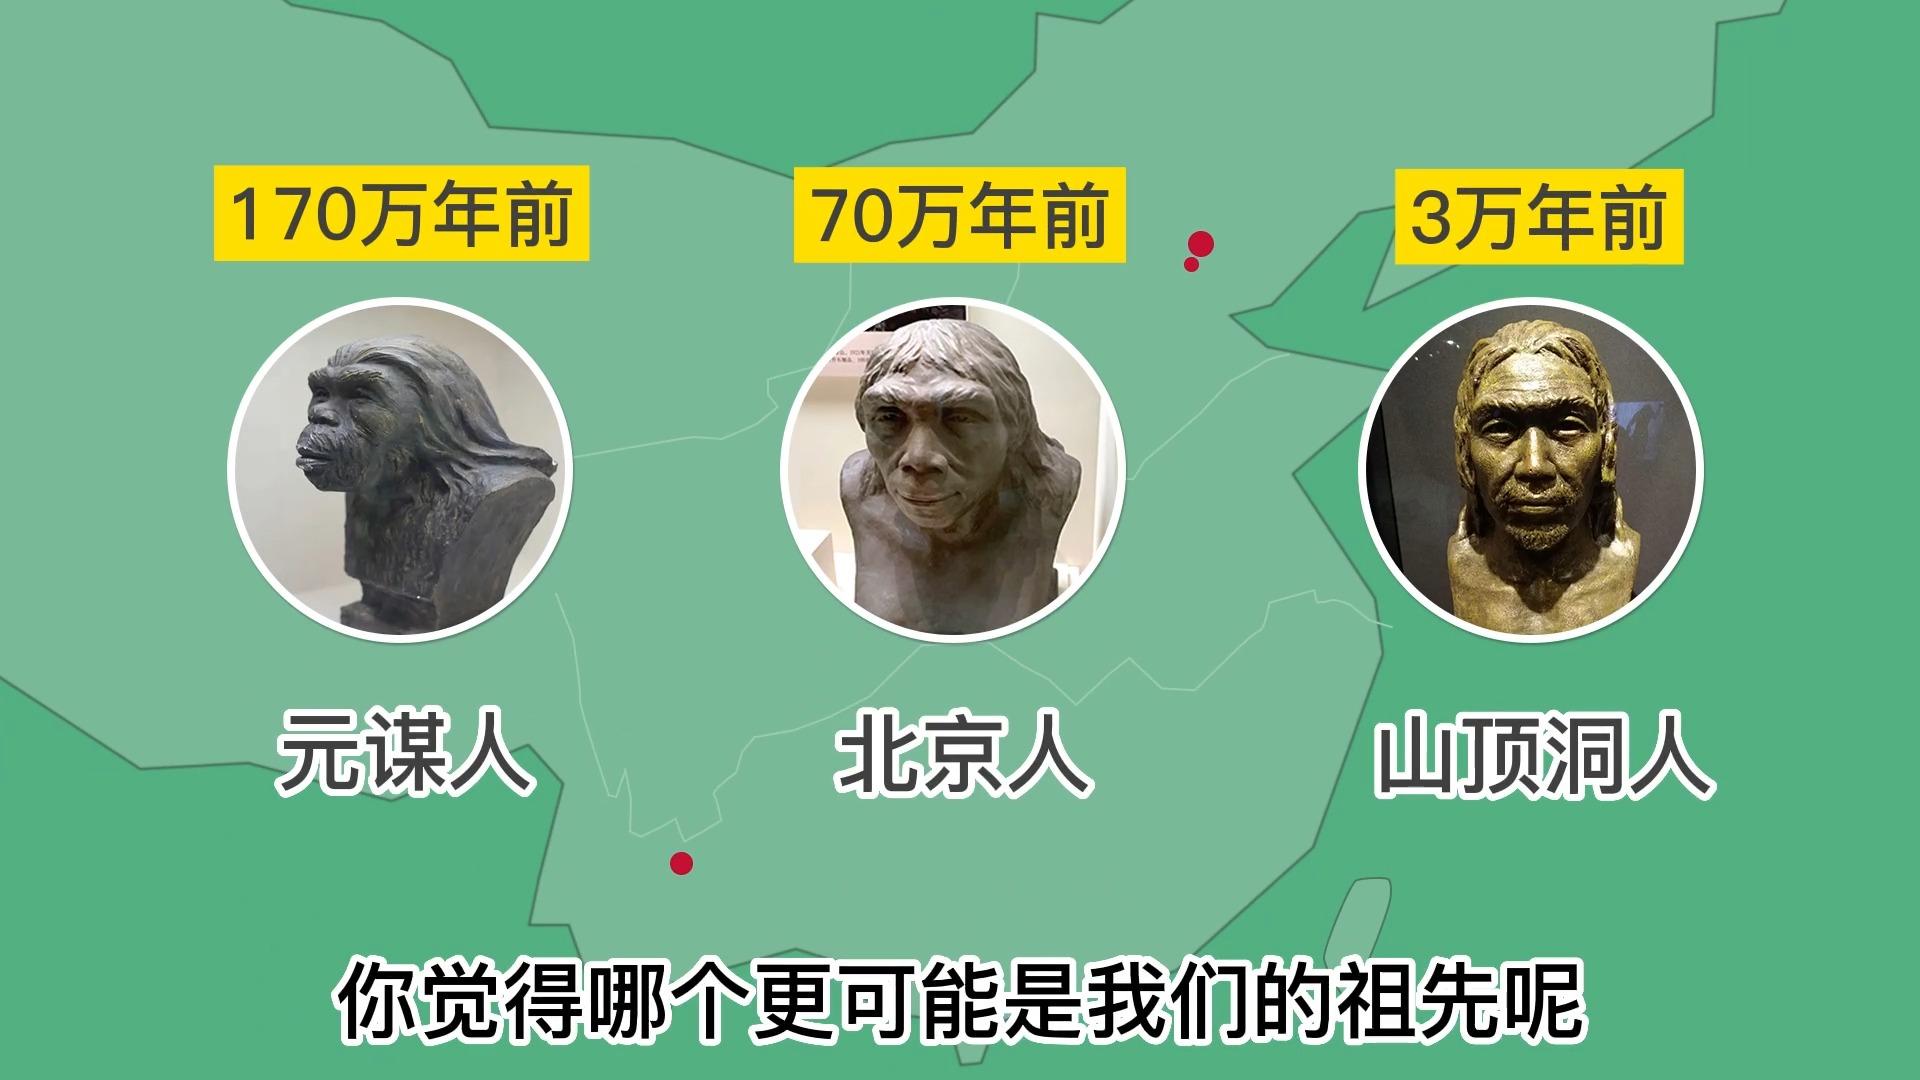 我国境内的元谋人,北京人,山顶洞人谁最有可能是我们的祖先?